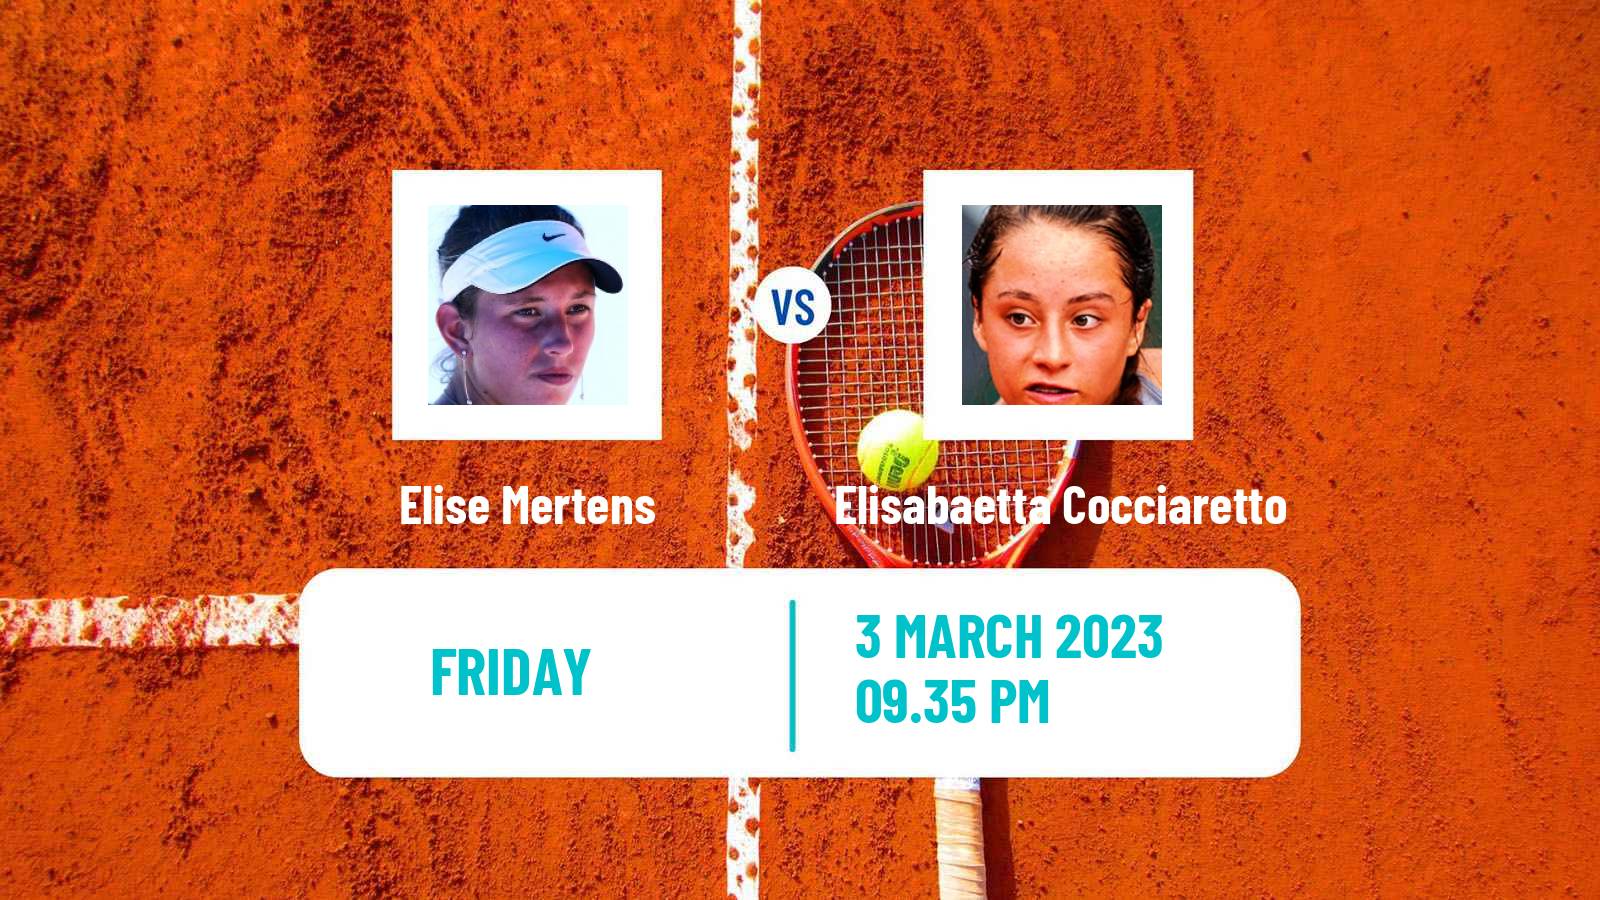 Tennis WTA Monterrey Elise Mertens - Elisabaetta Cocciaretto